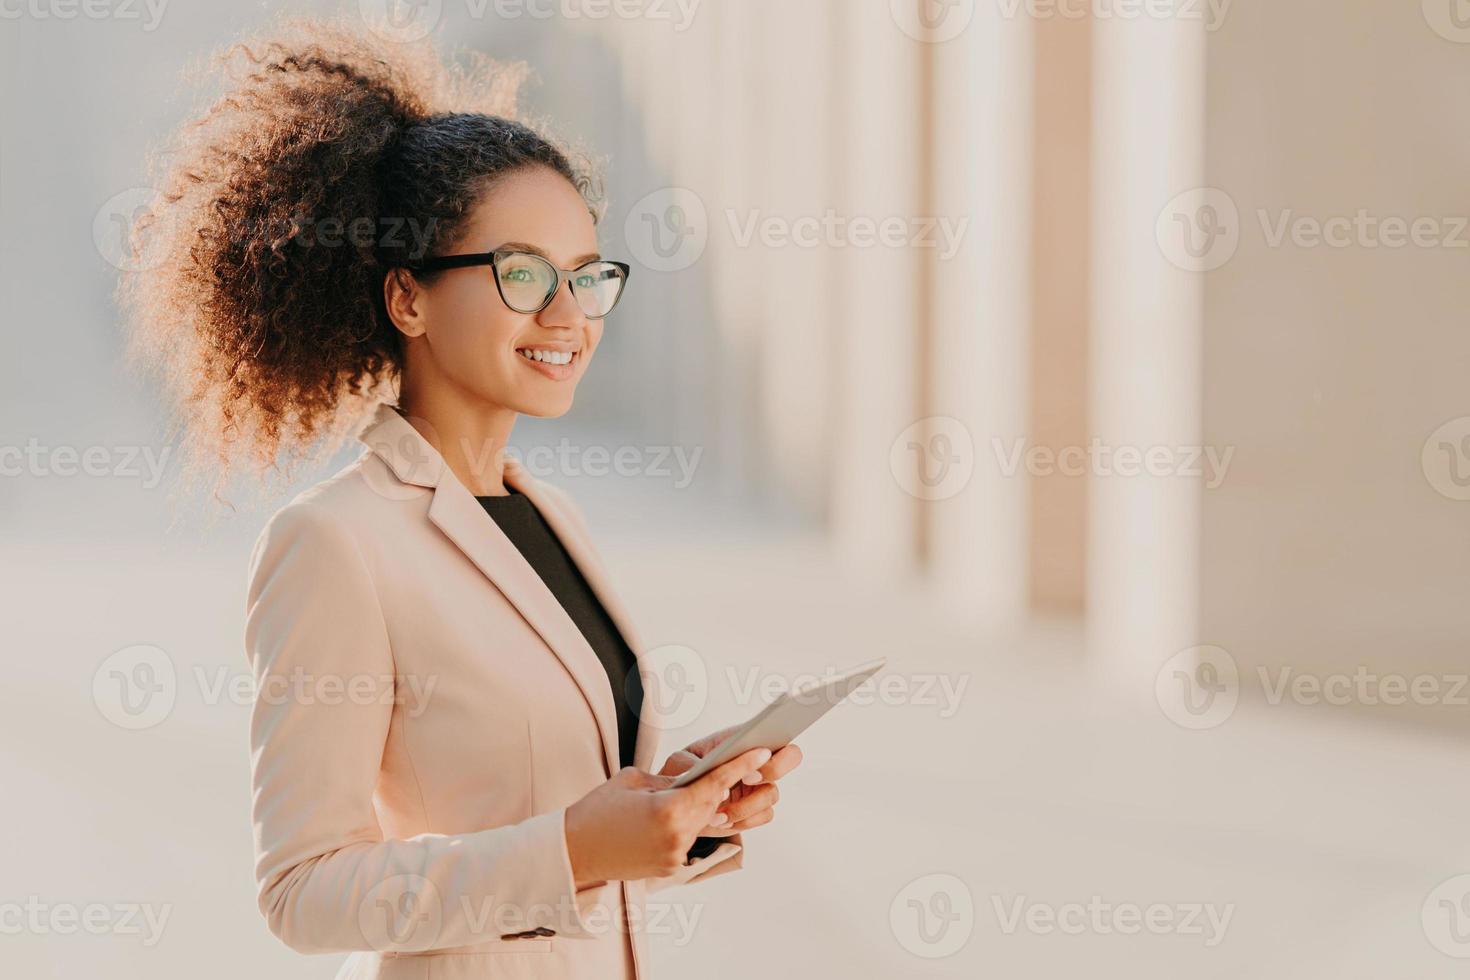 profilo di una donna felice dalla pelle scura con capelli afro, vestita elegantemente tiene in mano il tablet computer passeggiate in strada indossa occhiali ottici collegati a Internet ad alta velocità. stile di vita, tecnologia foto